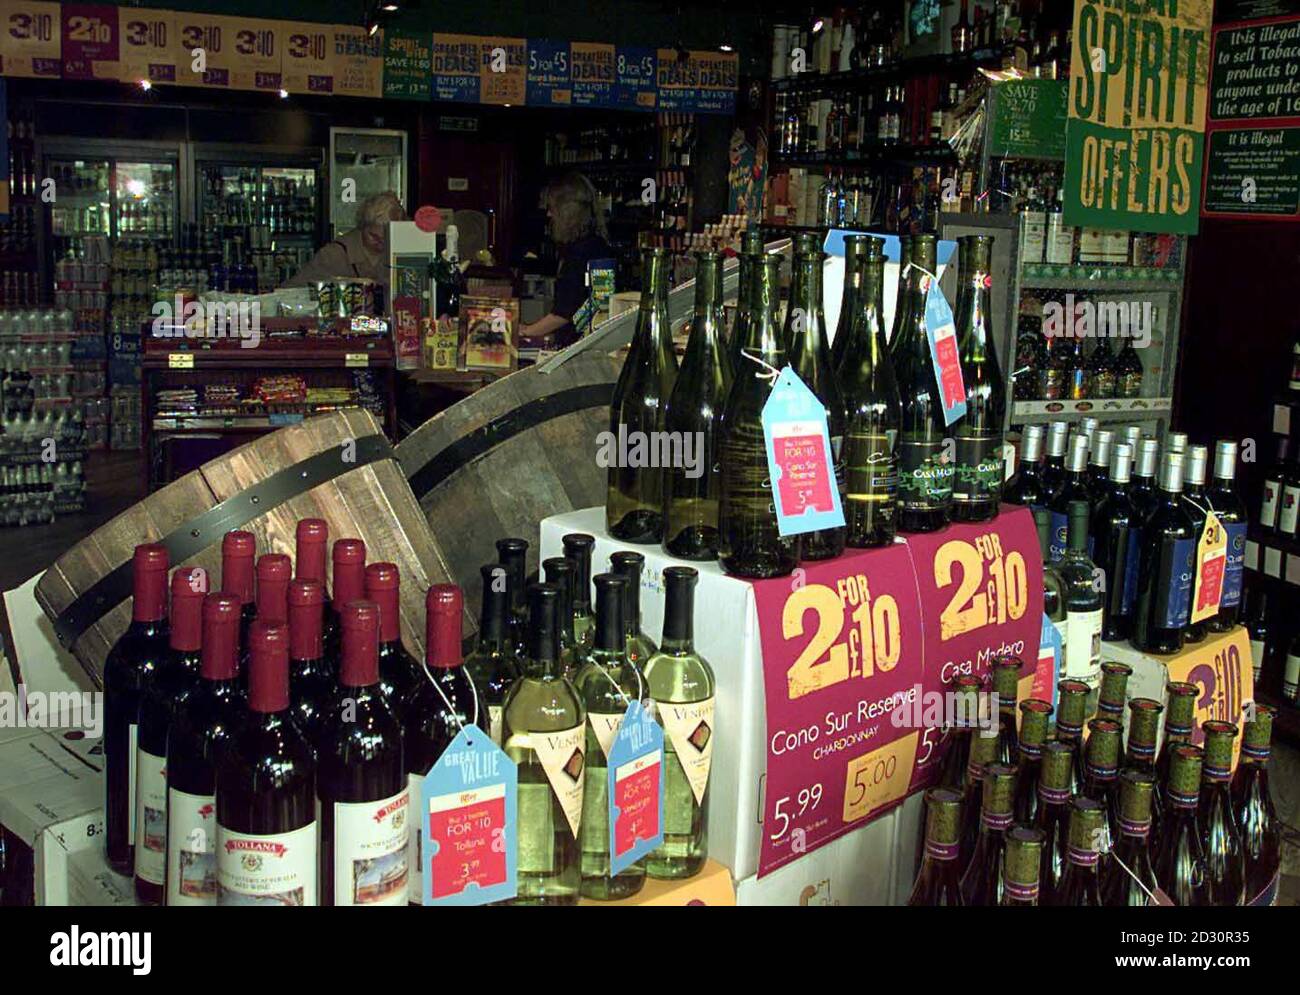 An dem Tag, an dem der britische Bundeskanzler Gordon Brown in seinem  Haushalt bekannt gab, dass die Zölle auf alle Spirituosen eingefroren  wurden, Bier um 1 Cent pro Pint und Wein um